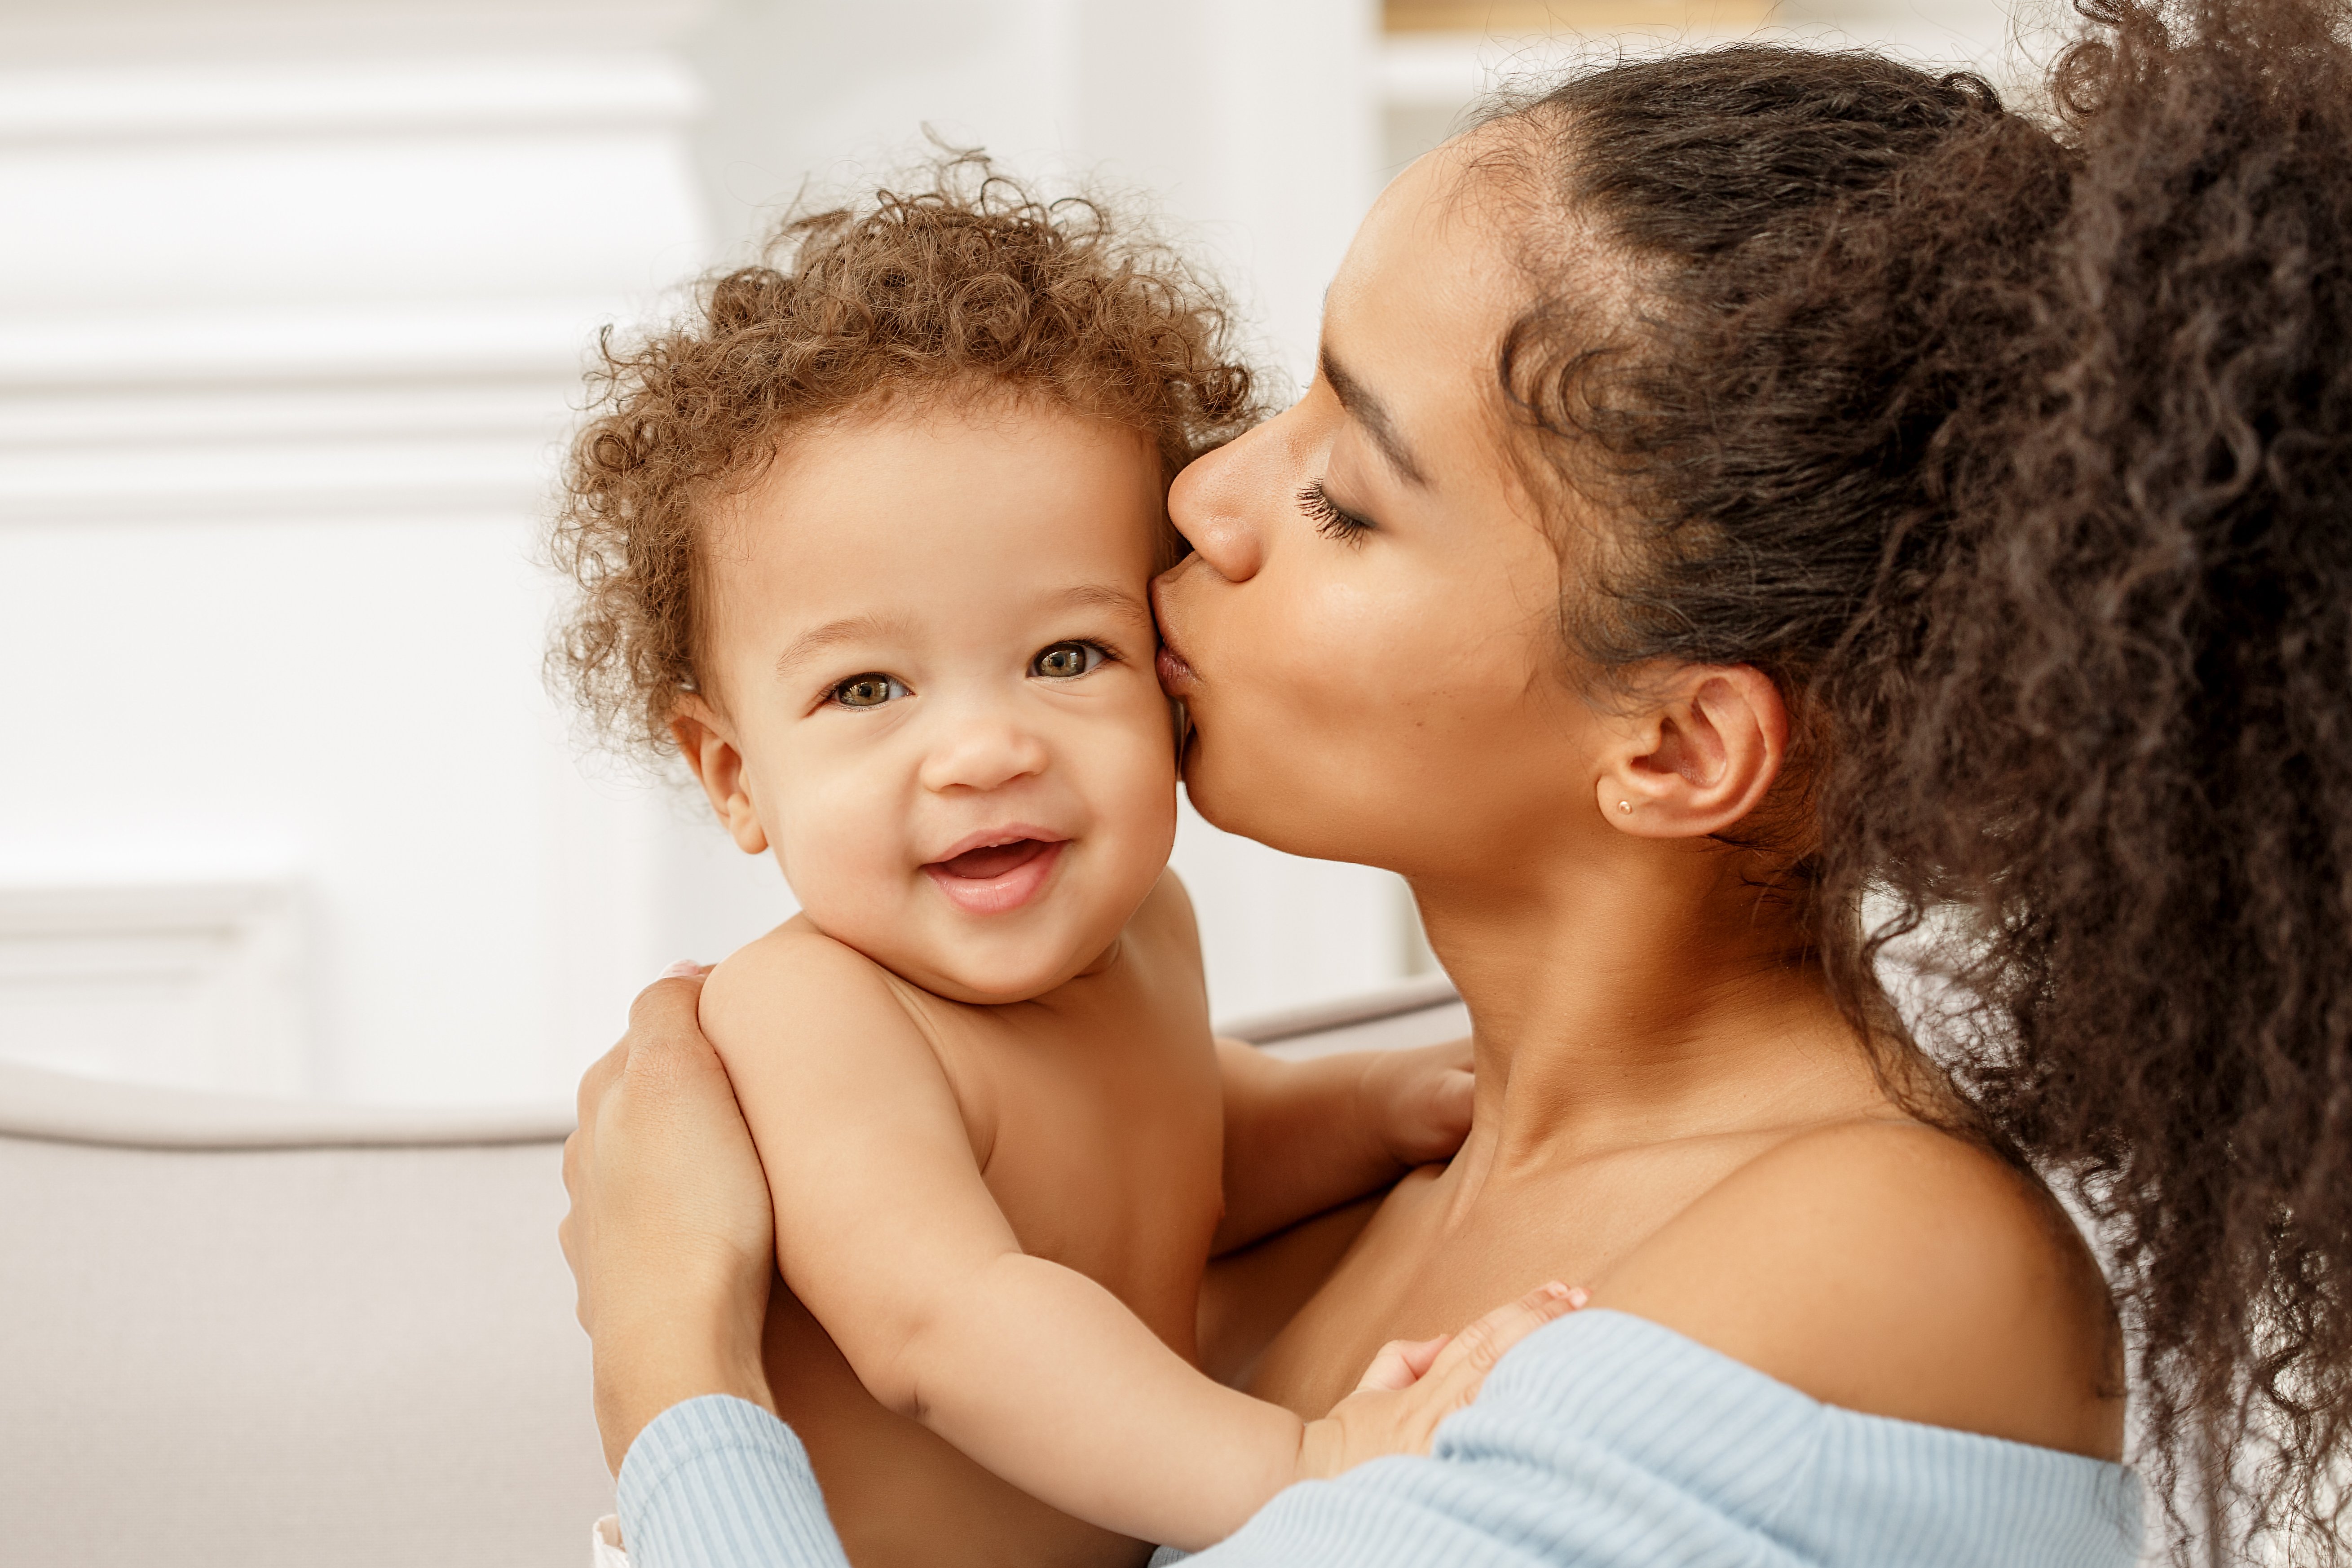 Eine Mutter küsst ihr Baby auf die Wange. | Quelle: Shutterstock